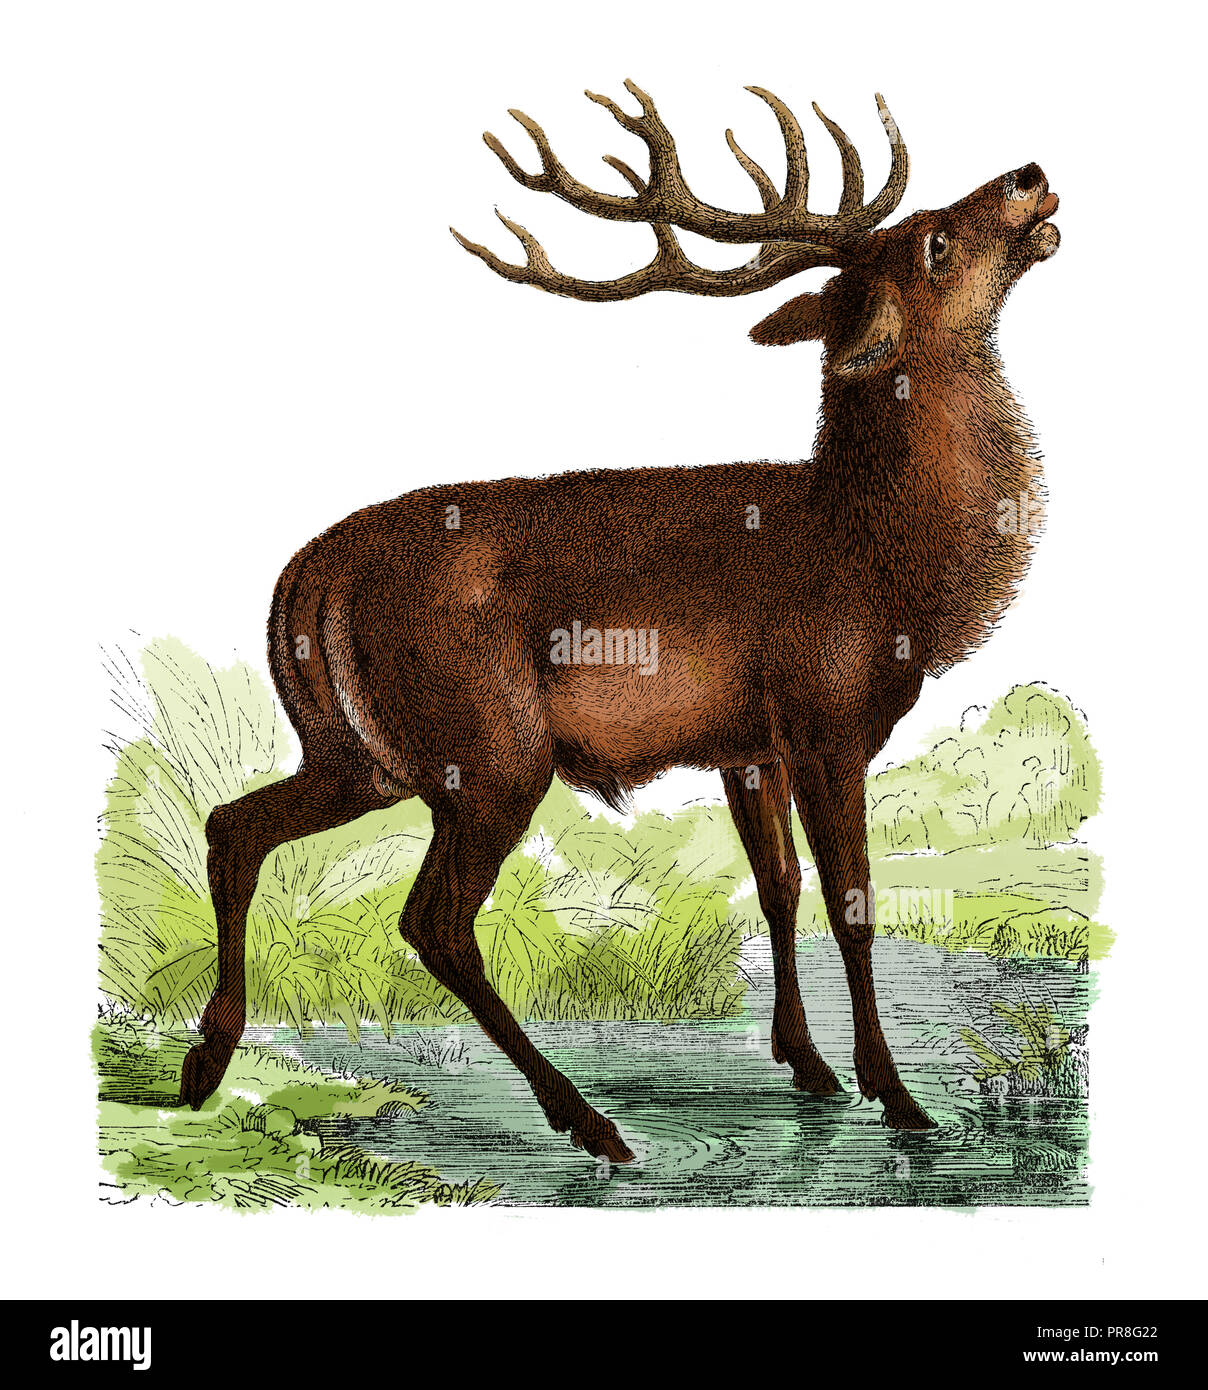 19th century illustration of a deer. Published in Systematischer Bilder-Atlas zum Conversations-Lexikon, Ikonographische Encyklopaedie der Wissenschaf Stock Photo